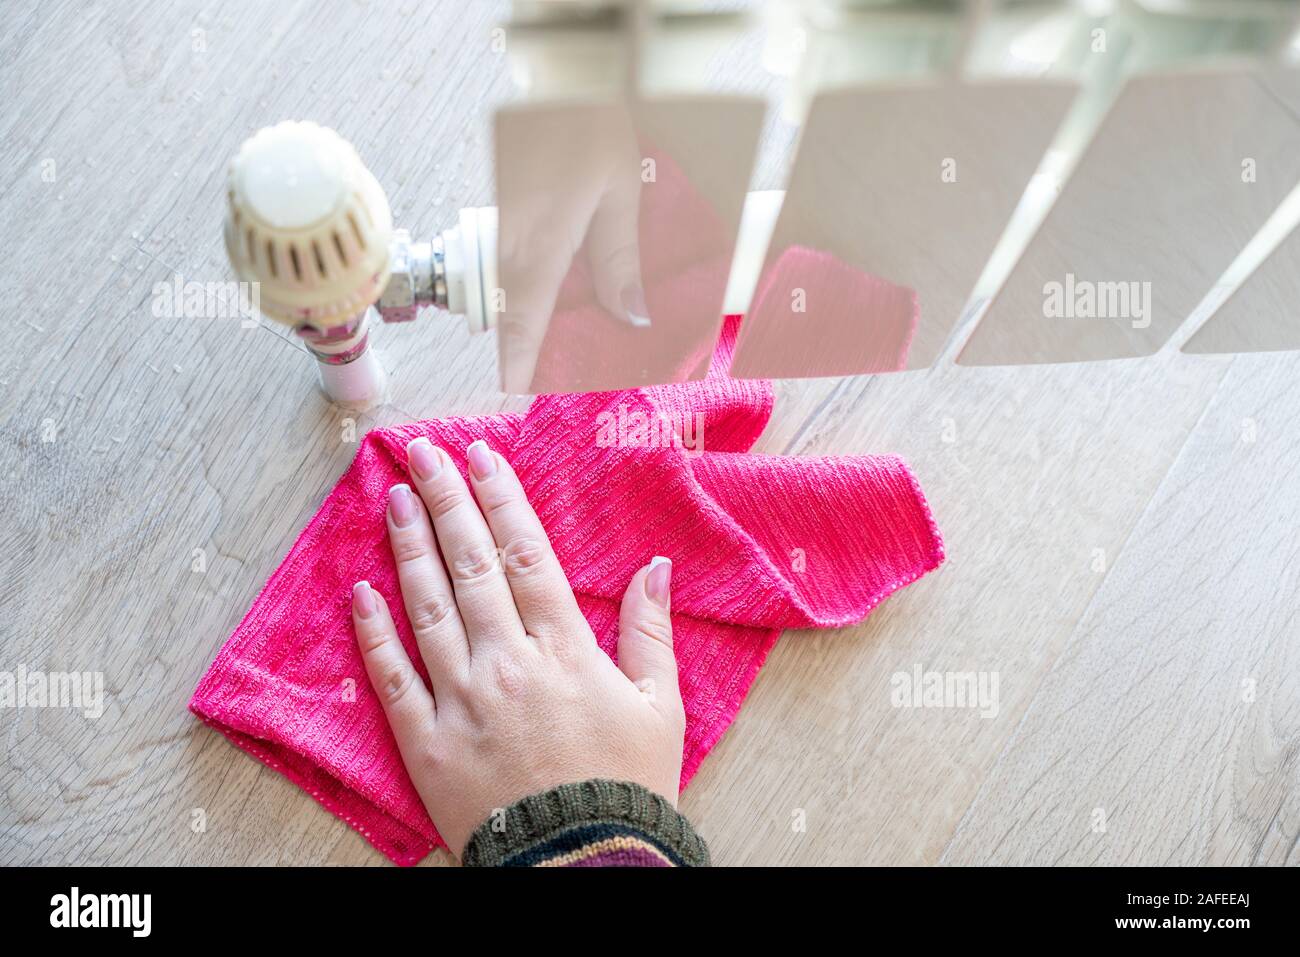 Weibliche hand mit Lappen reinigen Wasser von der Heizung Kühler  Stockfotografie - Alamy